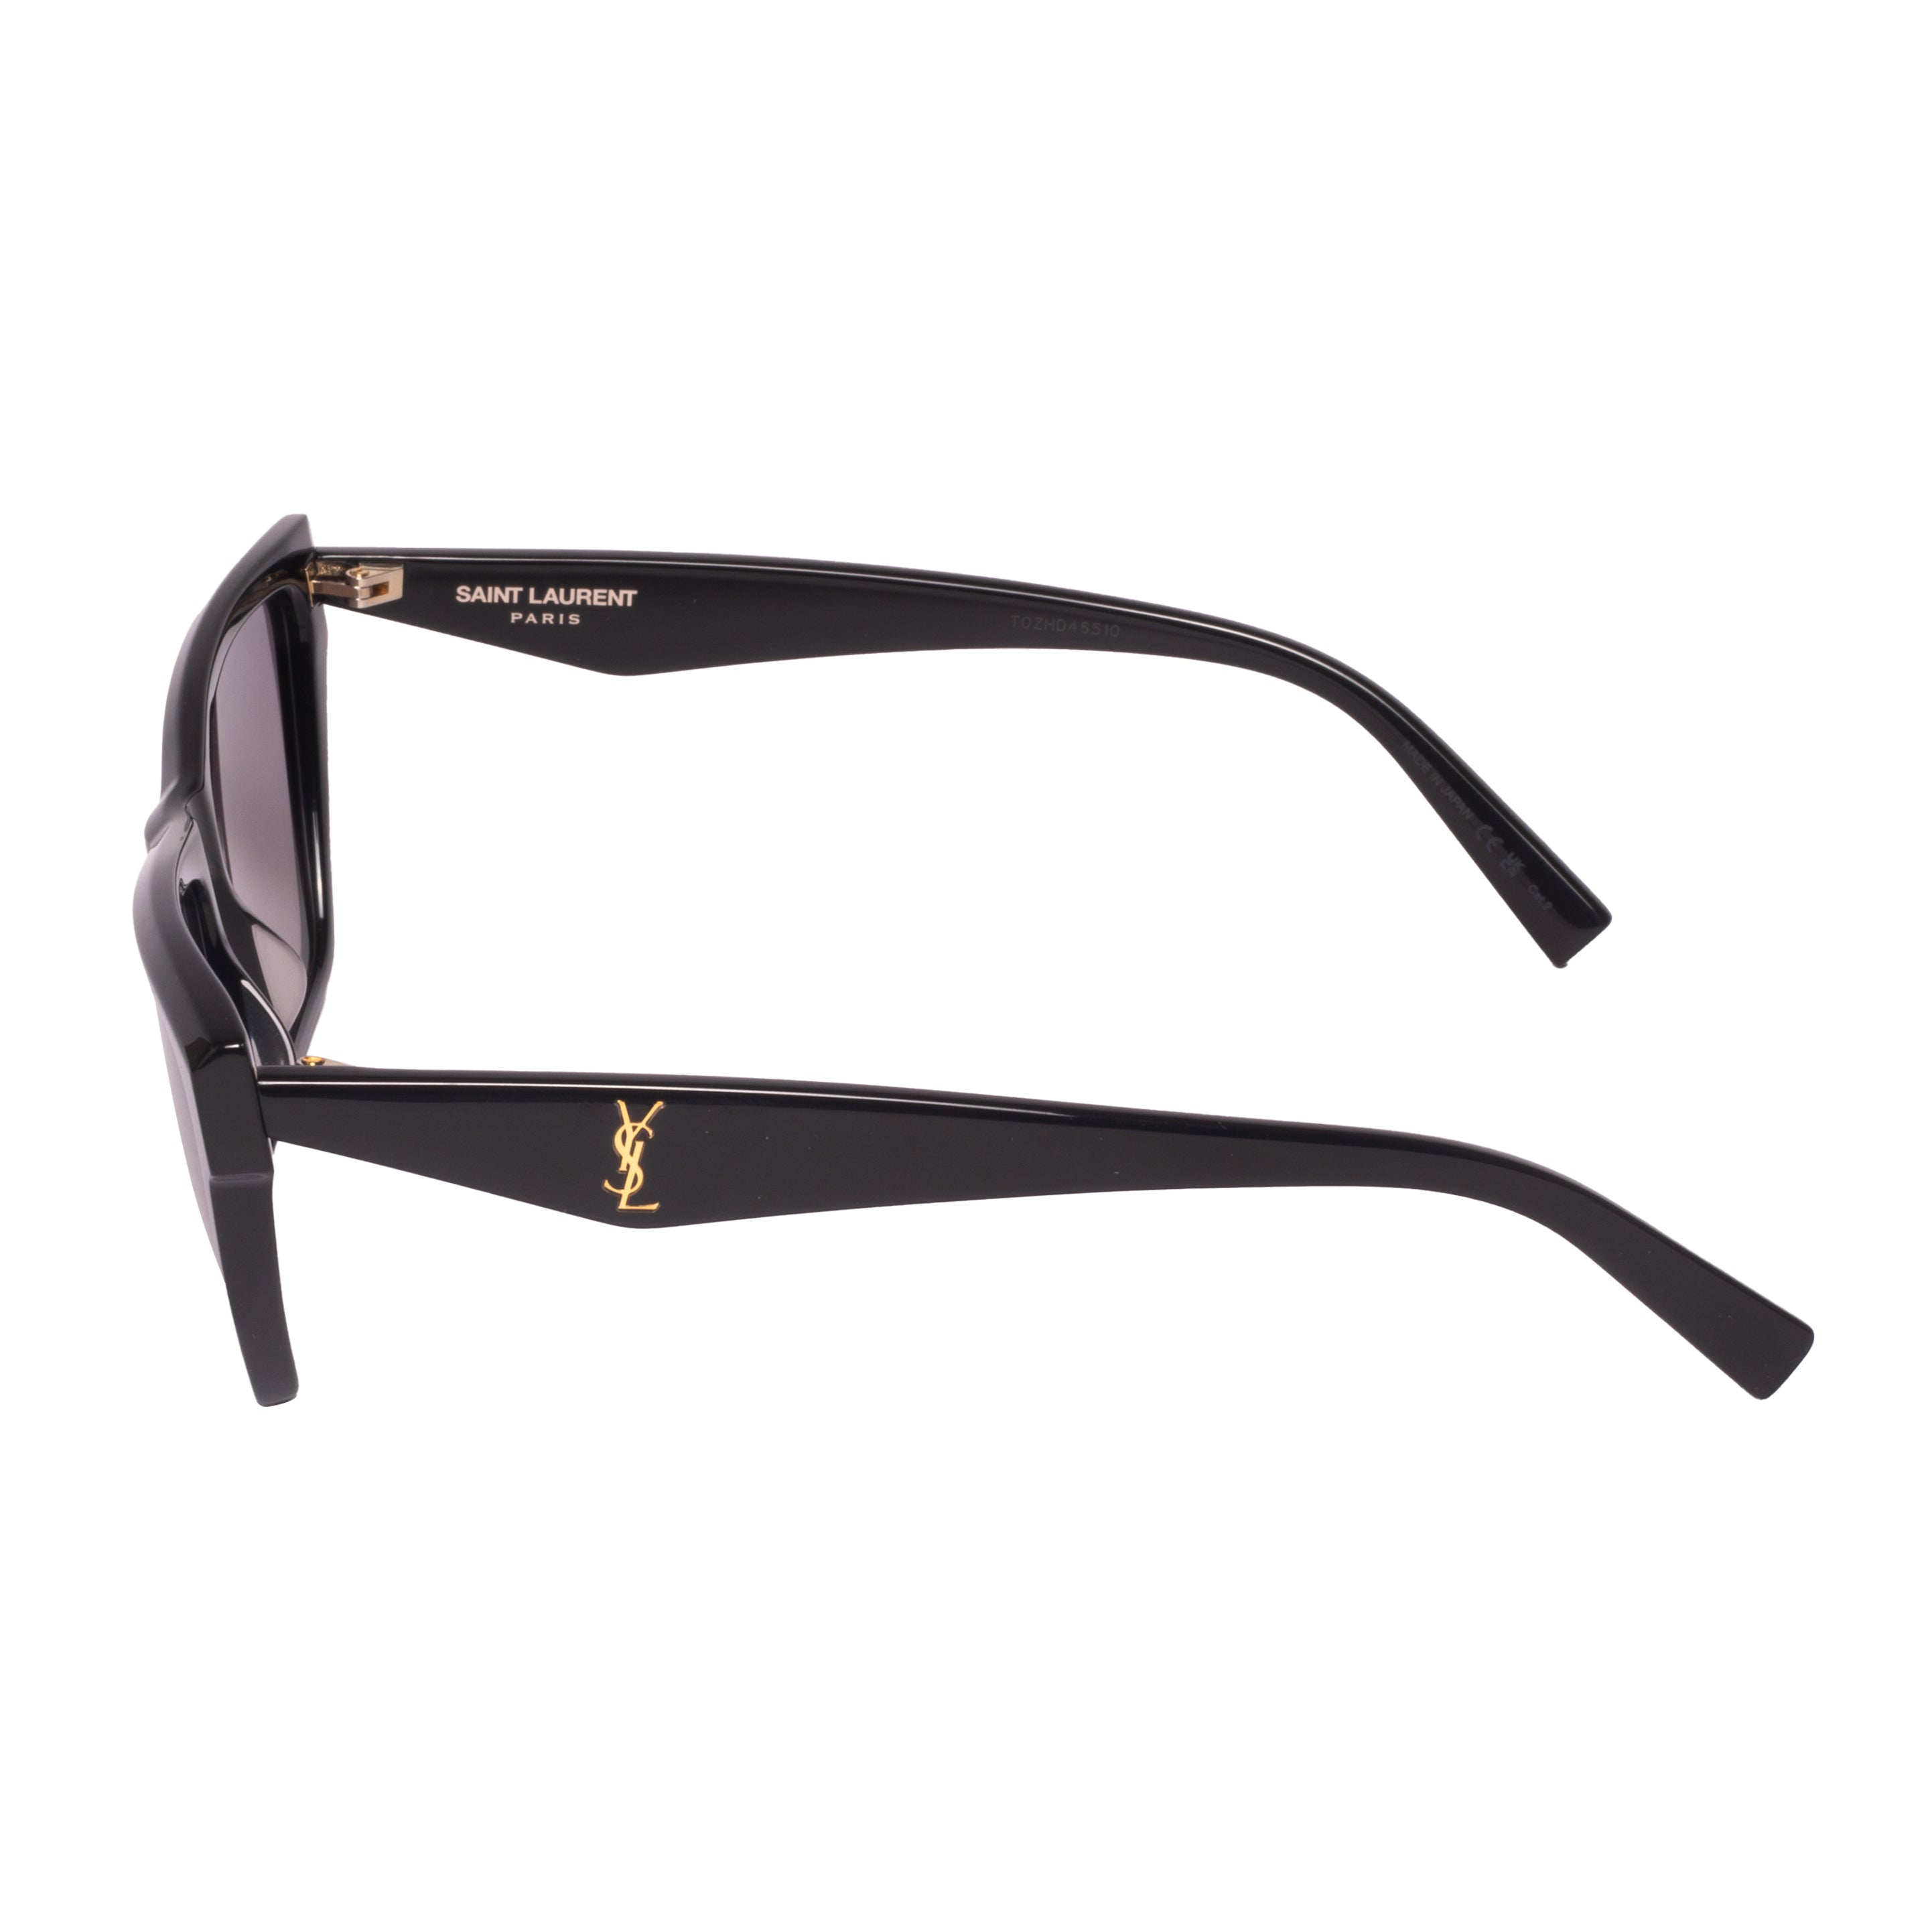 Saint Laurent-SL M103-58-001 Sunglasses - Premium Sunglasses from Saint Laurent - Just Rs. 24100! Shop now at Laxmi Opticians